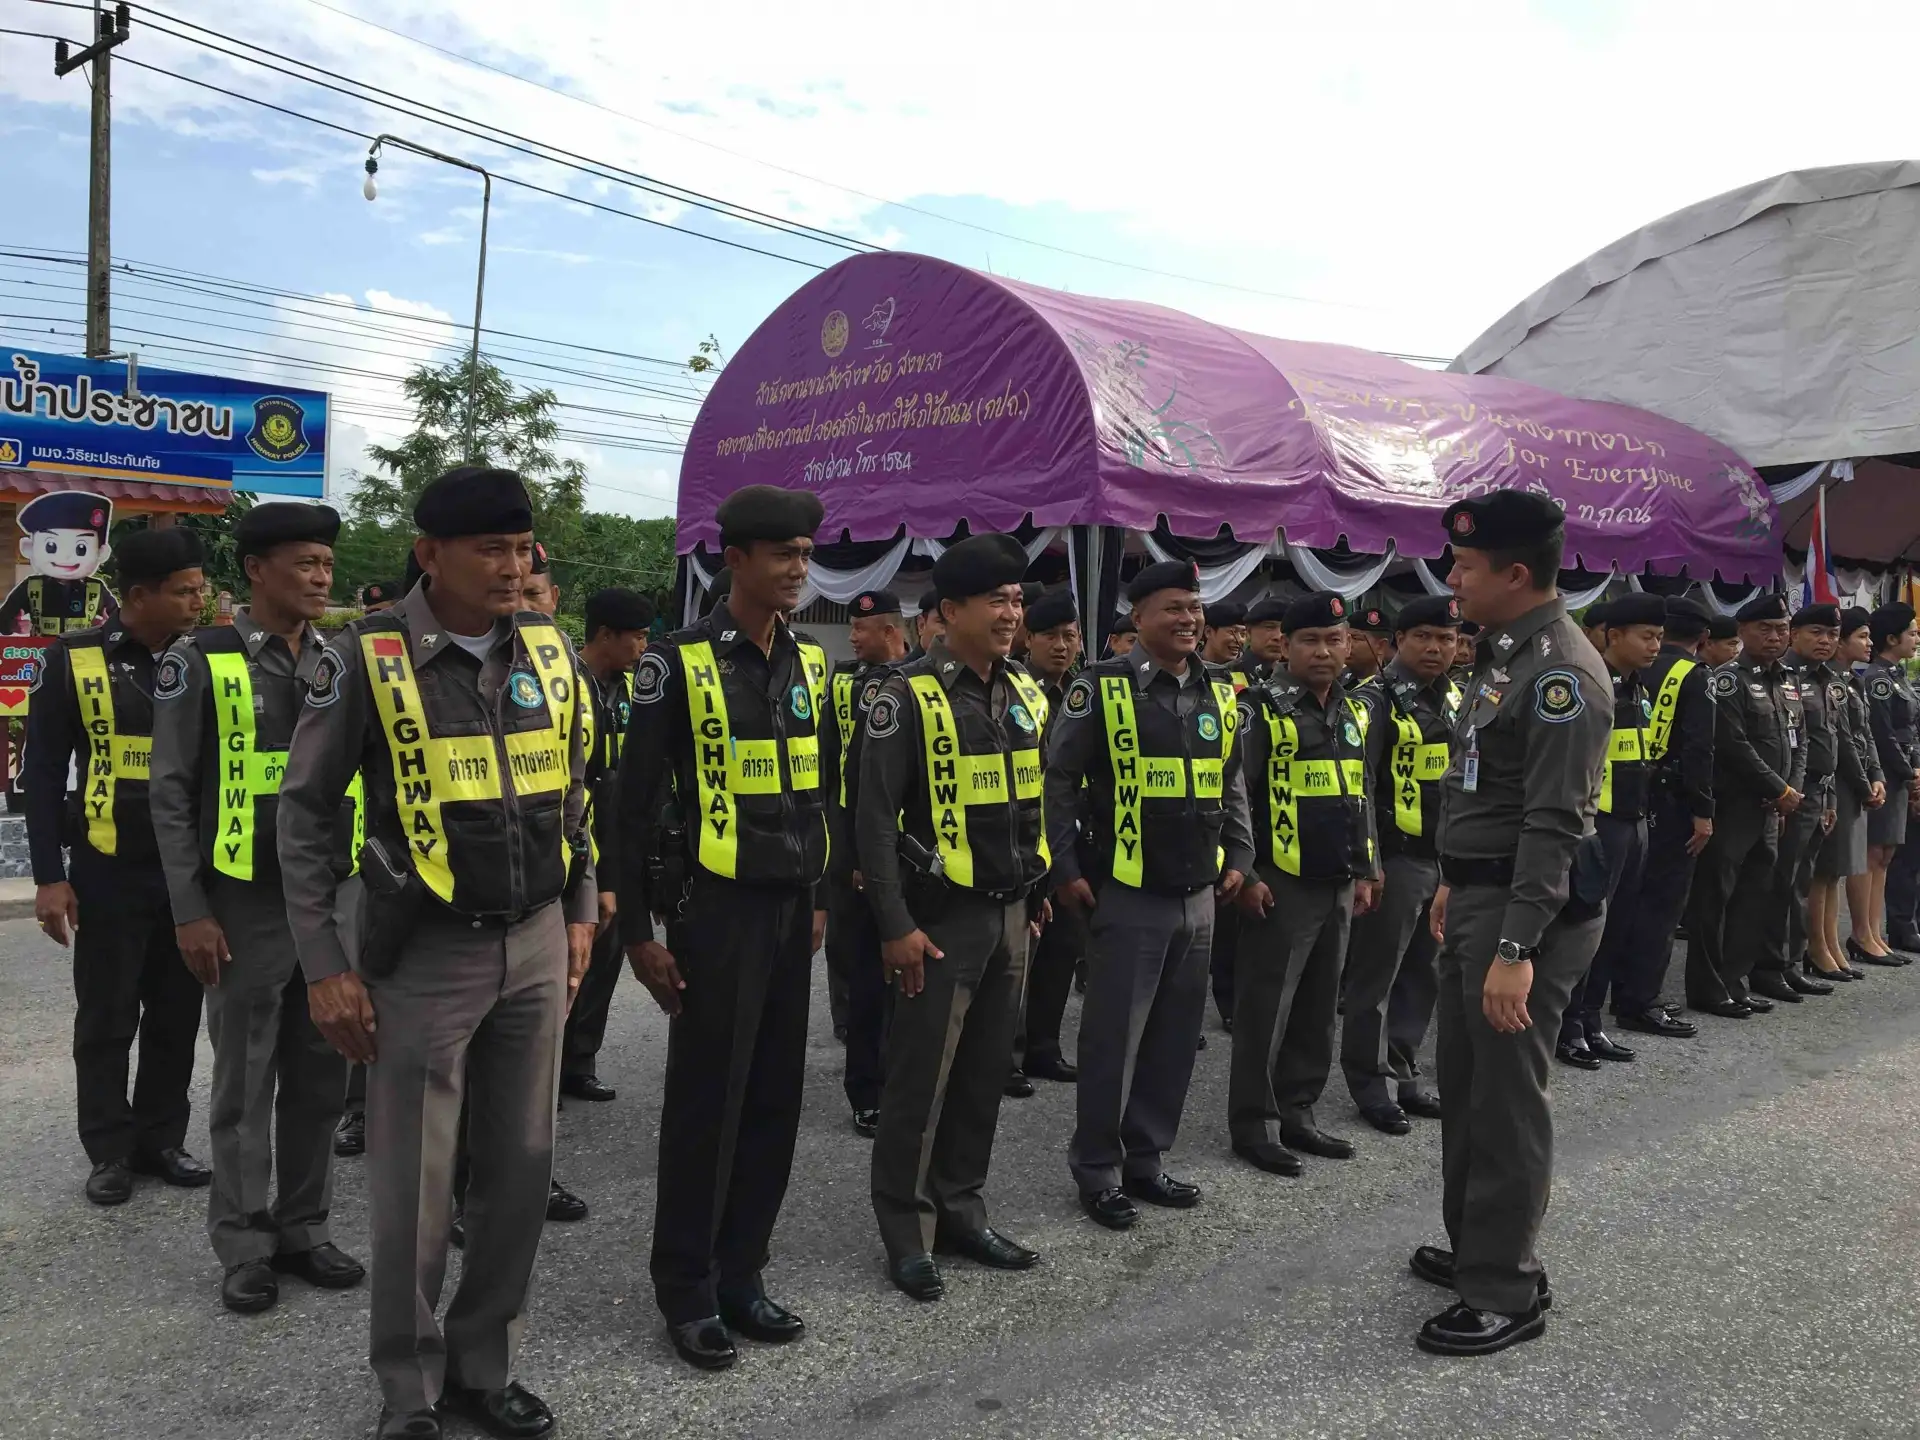 ตำรวจทางหลวง ปล่อยแถวร่วมรณรงค์ป้องกันลดอุบัติเหตุช่วงเทศกาลปีใหม่ 2560